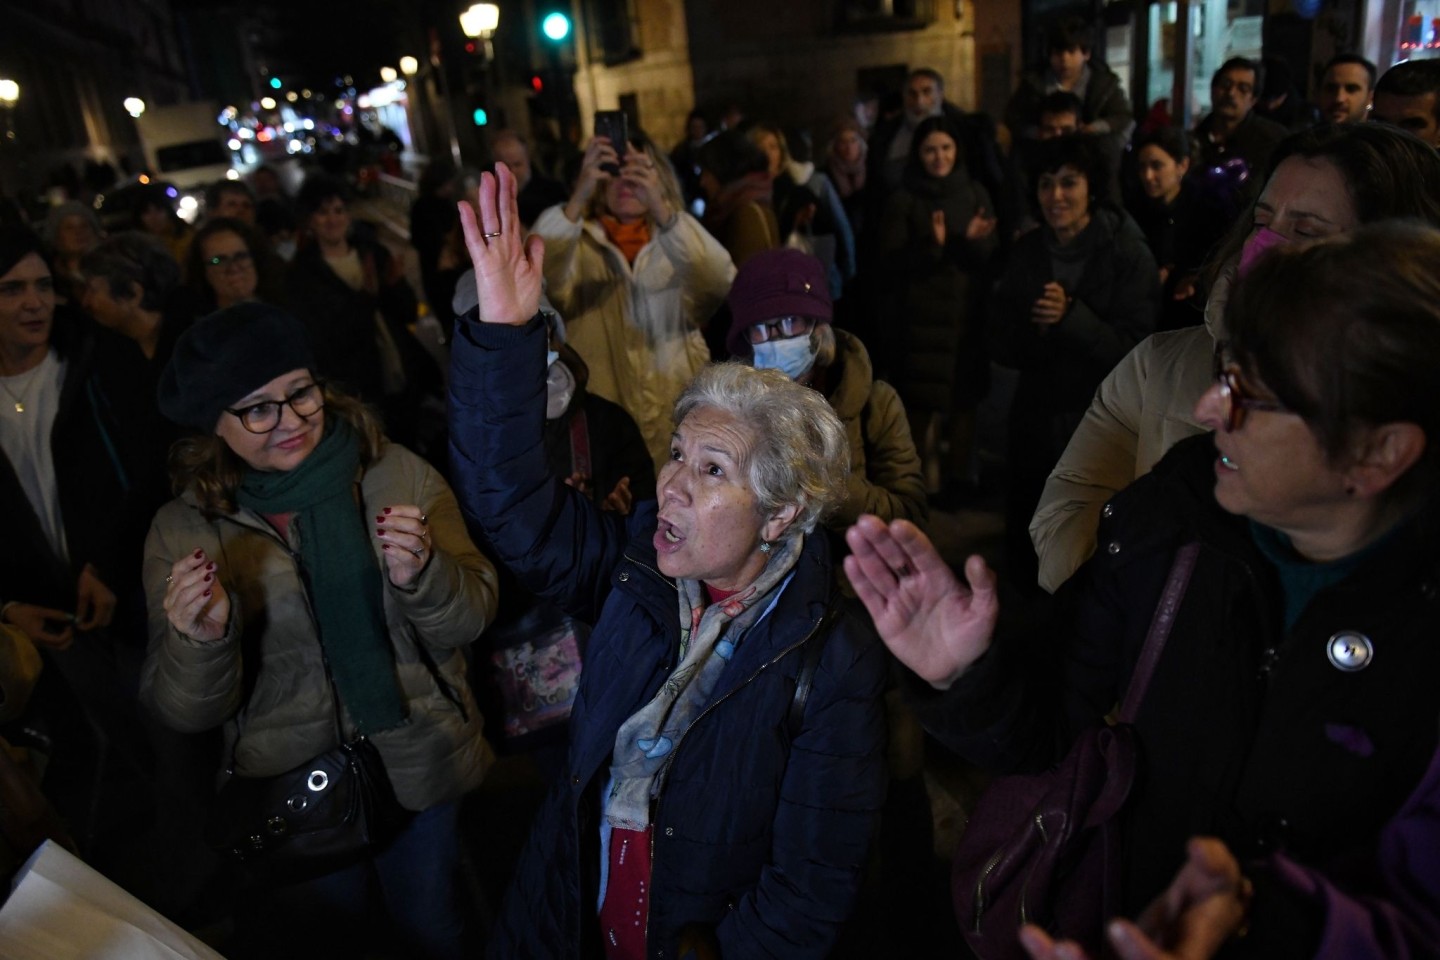 Menschen protestieren in Madrid gegen häusliche Gewalt und die erneute Ermordung von Frauen.